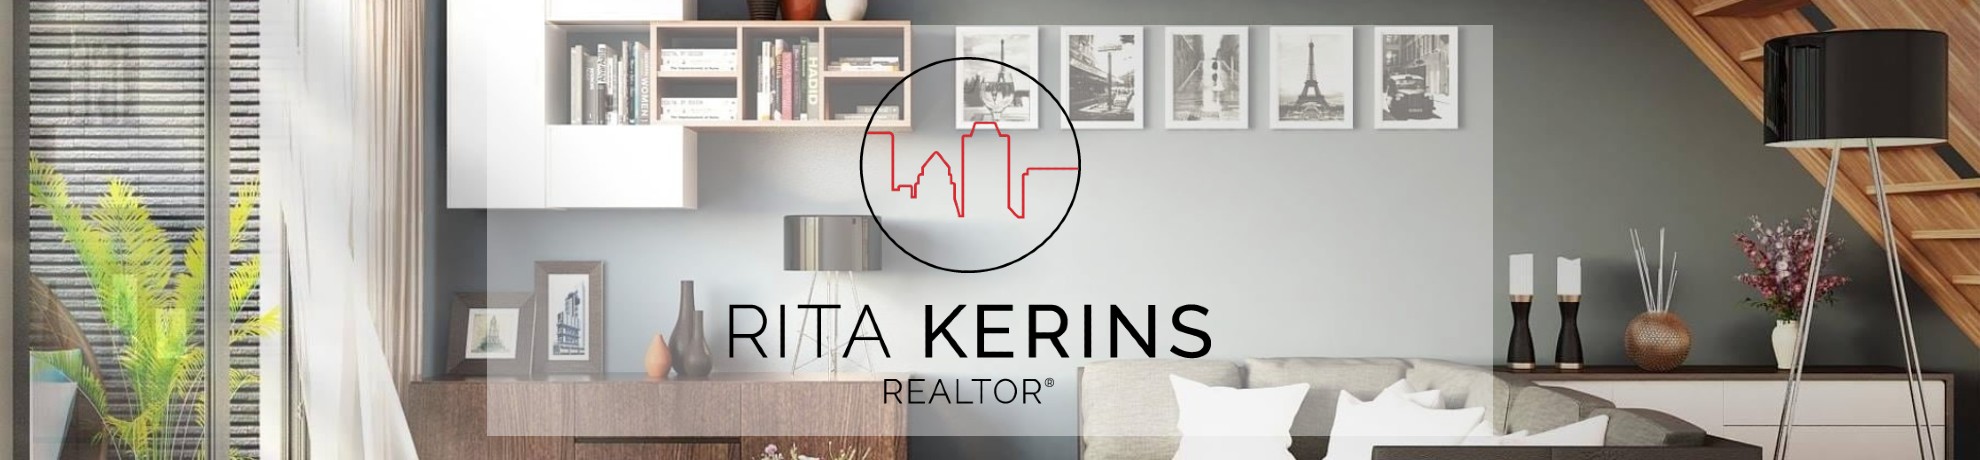 Rita Kerins-Neighborhood Expert Chicago Real Estate Broker